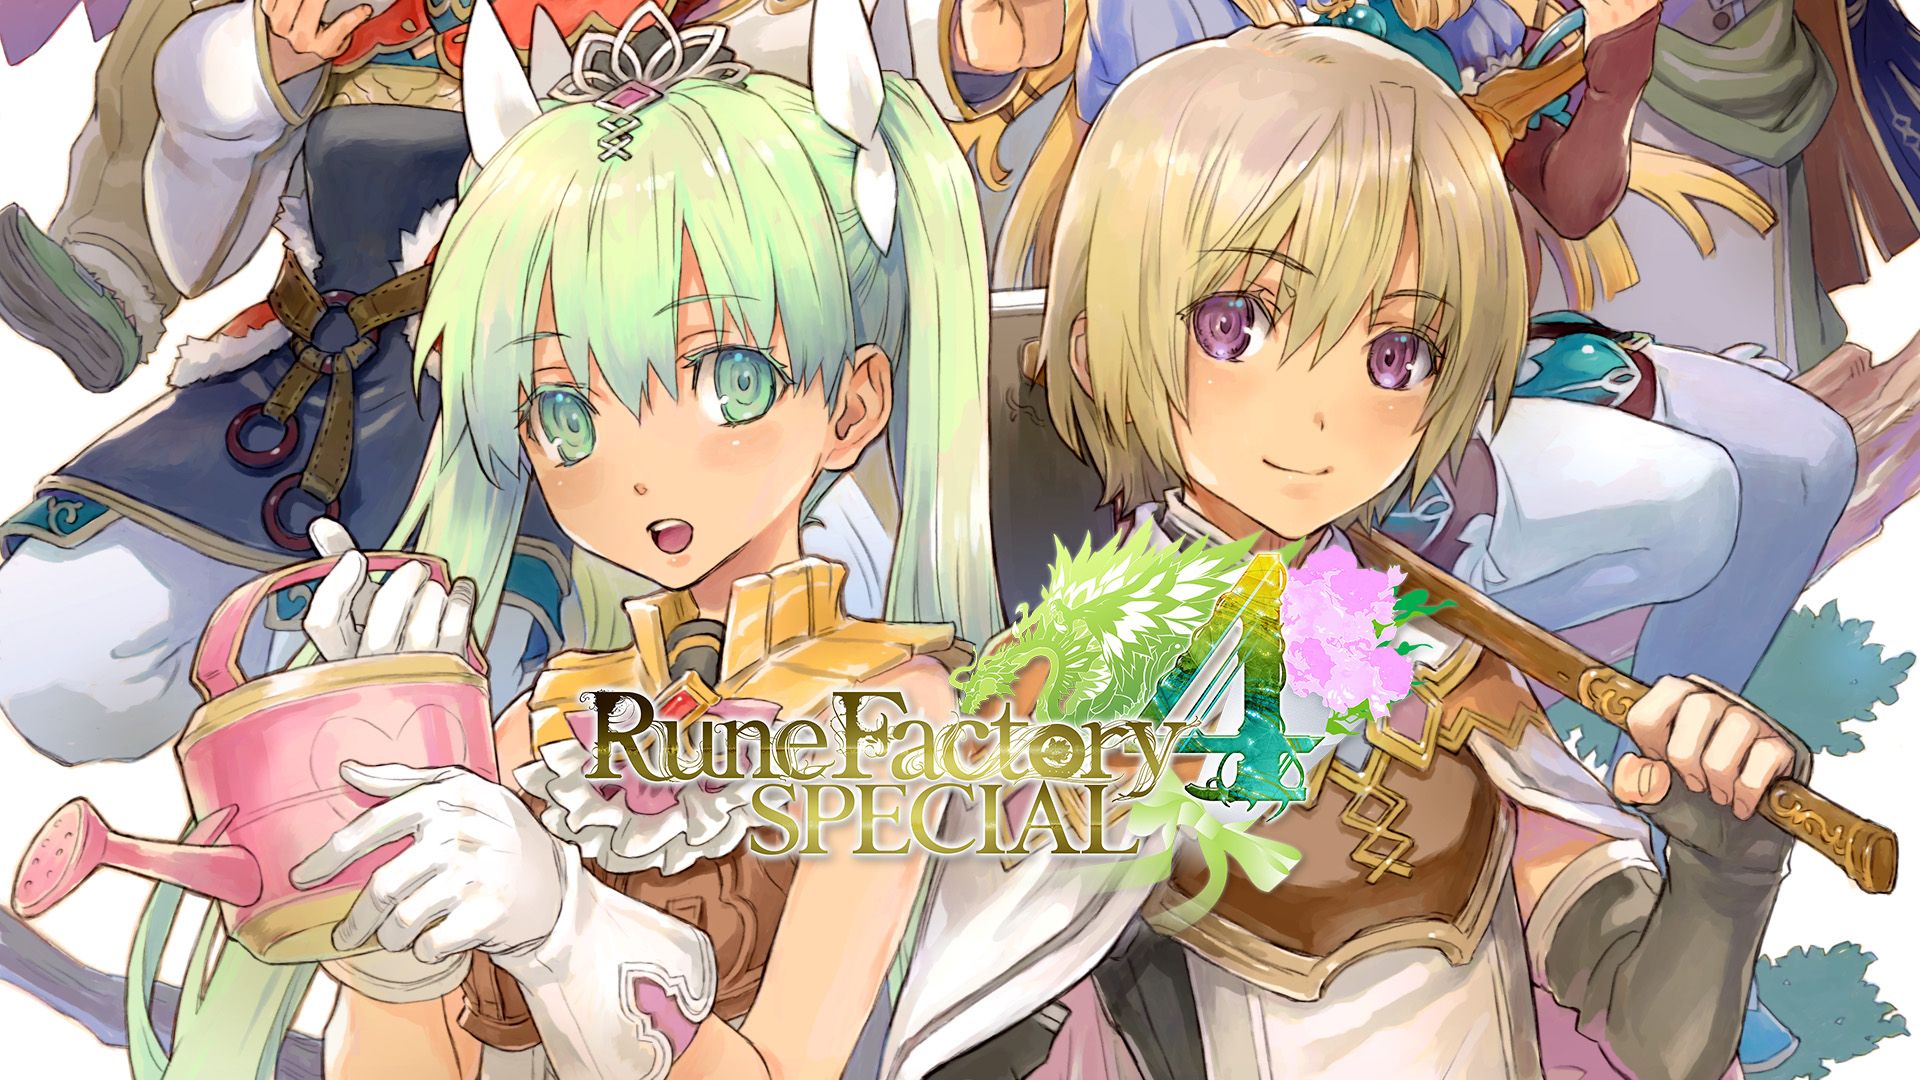 Rune Factory 4 Special for Nintendo .nintendo.com